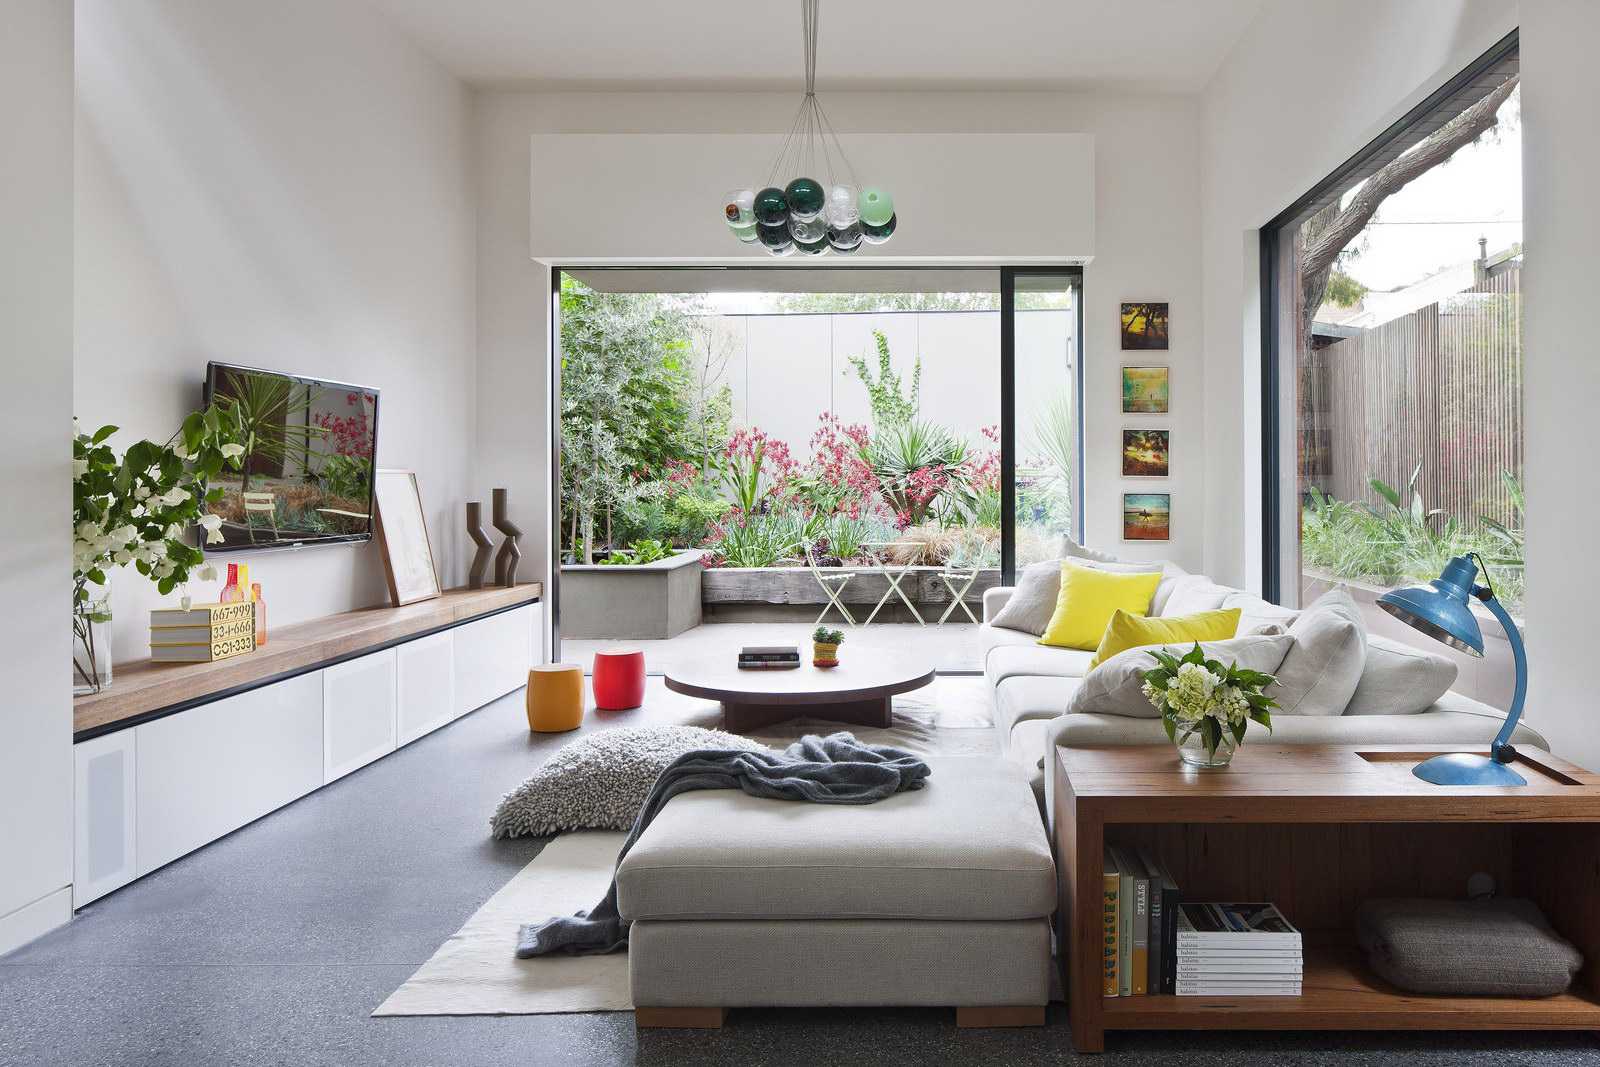 Дизайн однокомнатной квартиры – идеи для ремонта и оформления интерьера